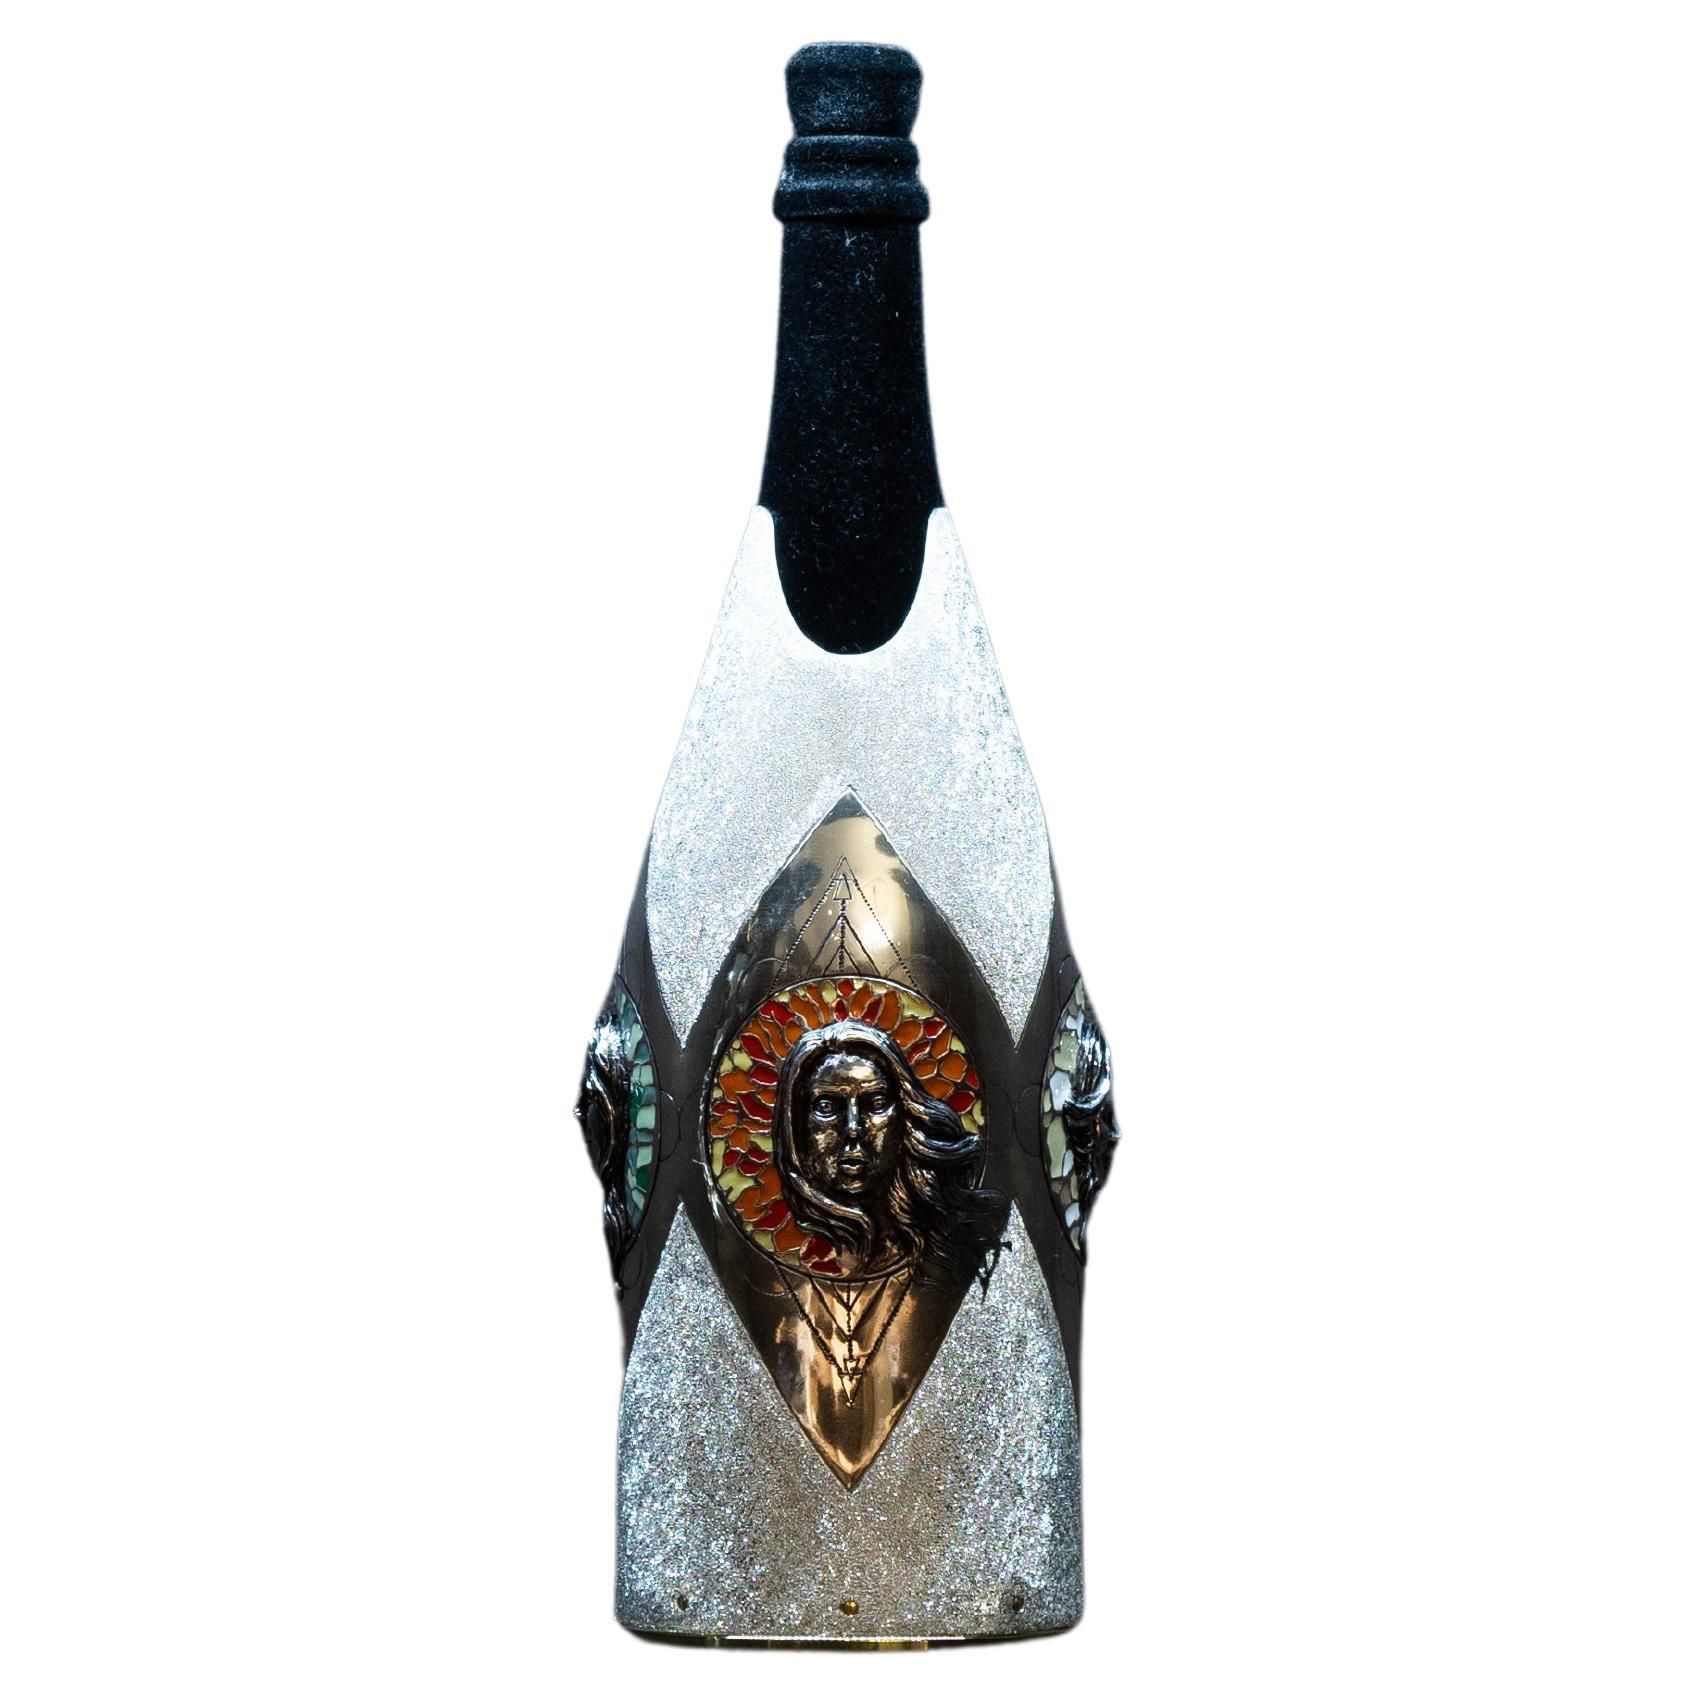 K-Over Alchimia per bottiglie di Champagne è un'opera interamente realizzata a mano in argento massiccio 999% e fa parte della nostra collezione Works of Art. L'idea dell'artista è quella di rappresentare i quattro elementi che secondo l'antica